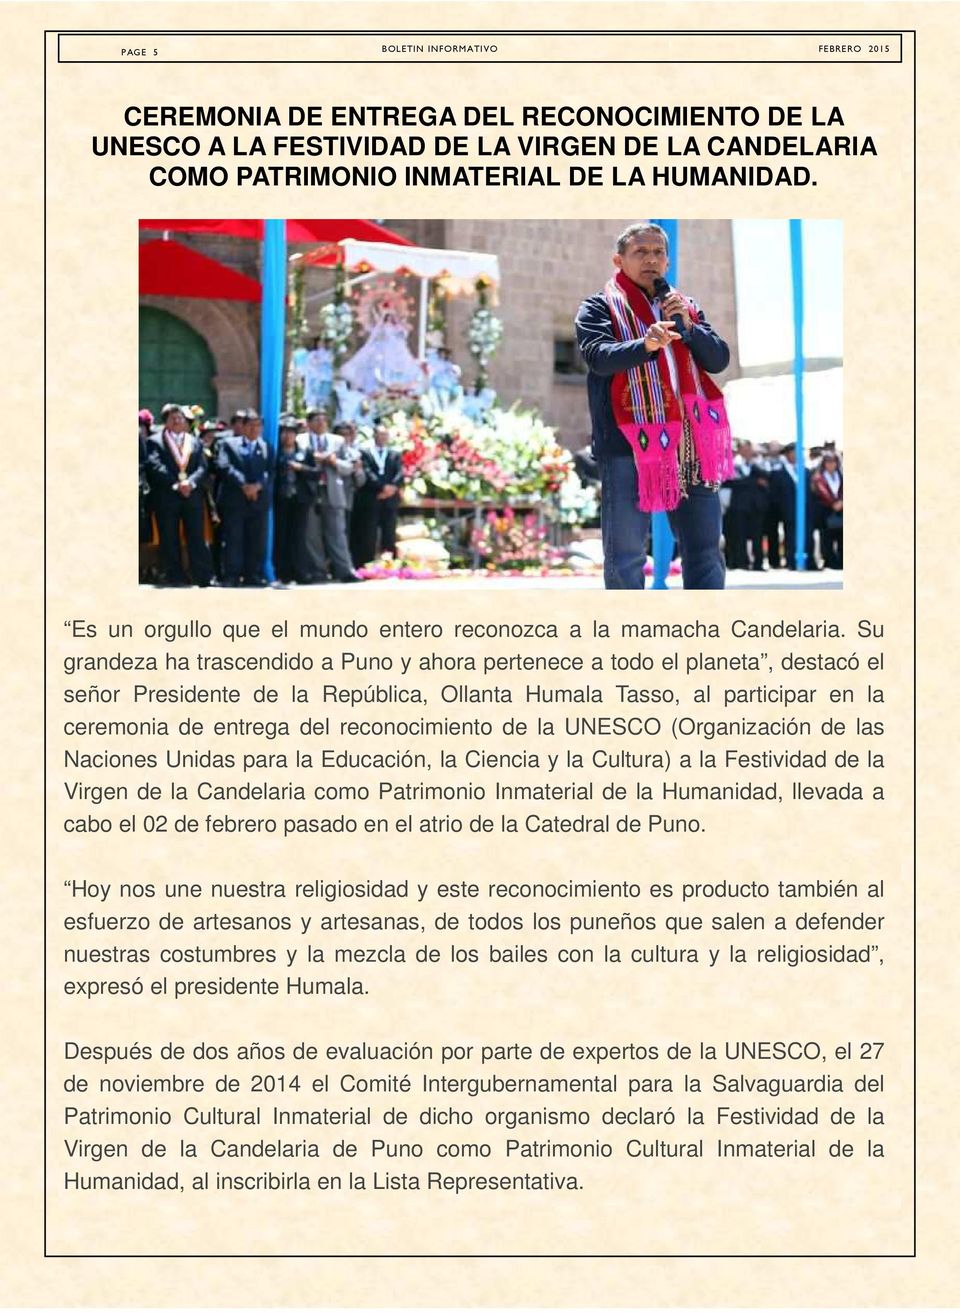 Su grandeza ha trascendido a Puno y ahora pertenece a todo el planeta, destacó el señor Presidente de la República, Ollanta Humala Tasso, al participar en la ceremonia de entrega del reconocimiento